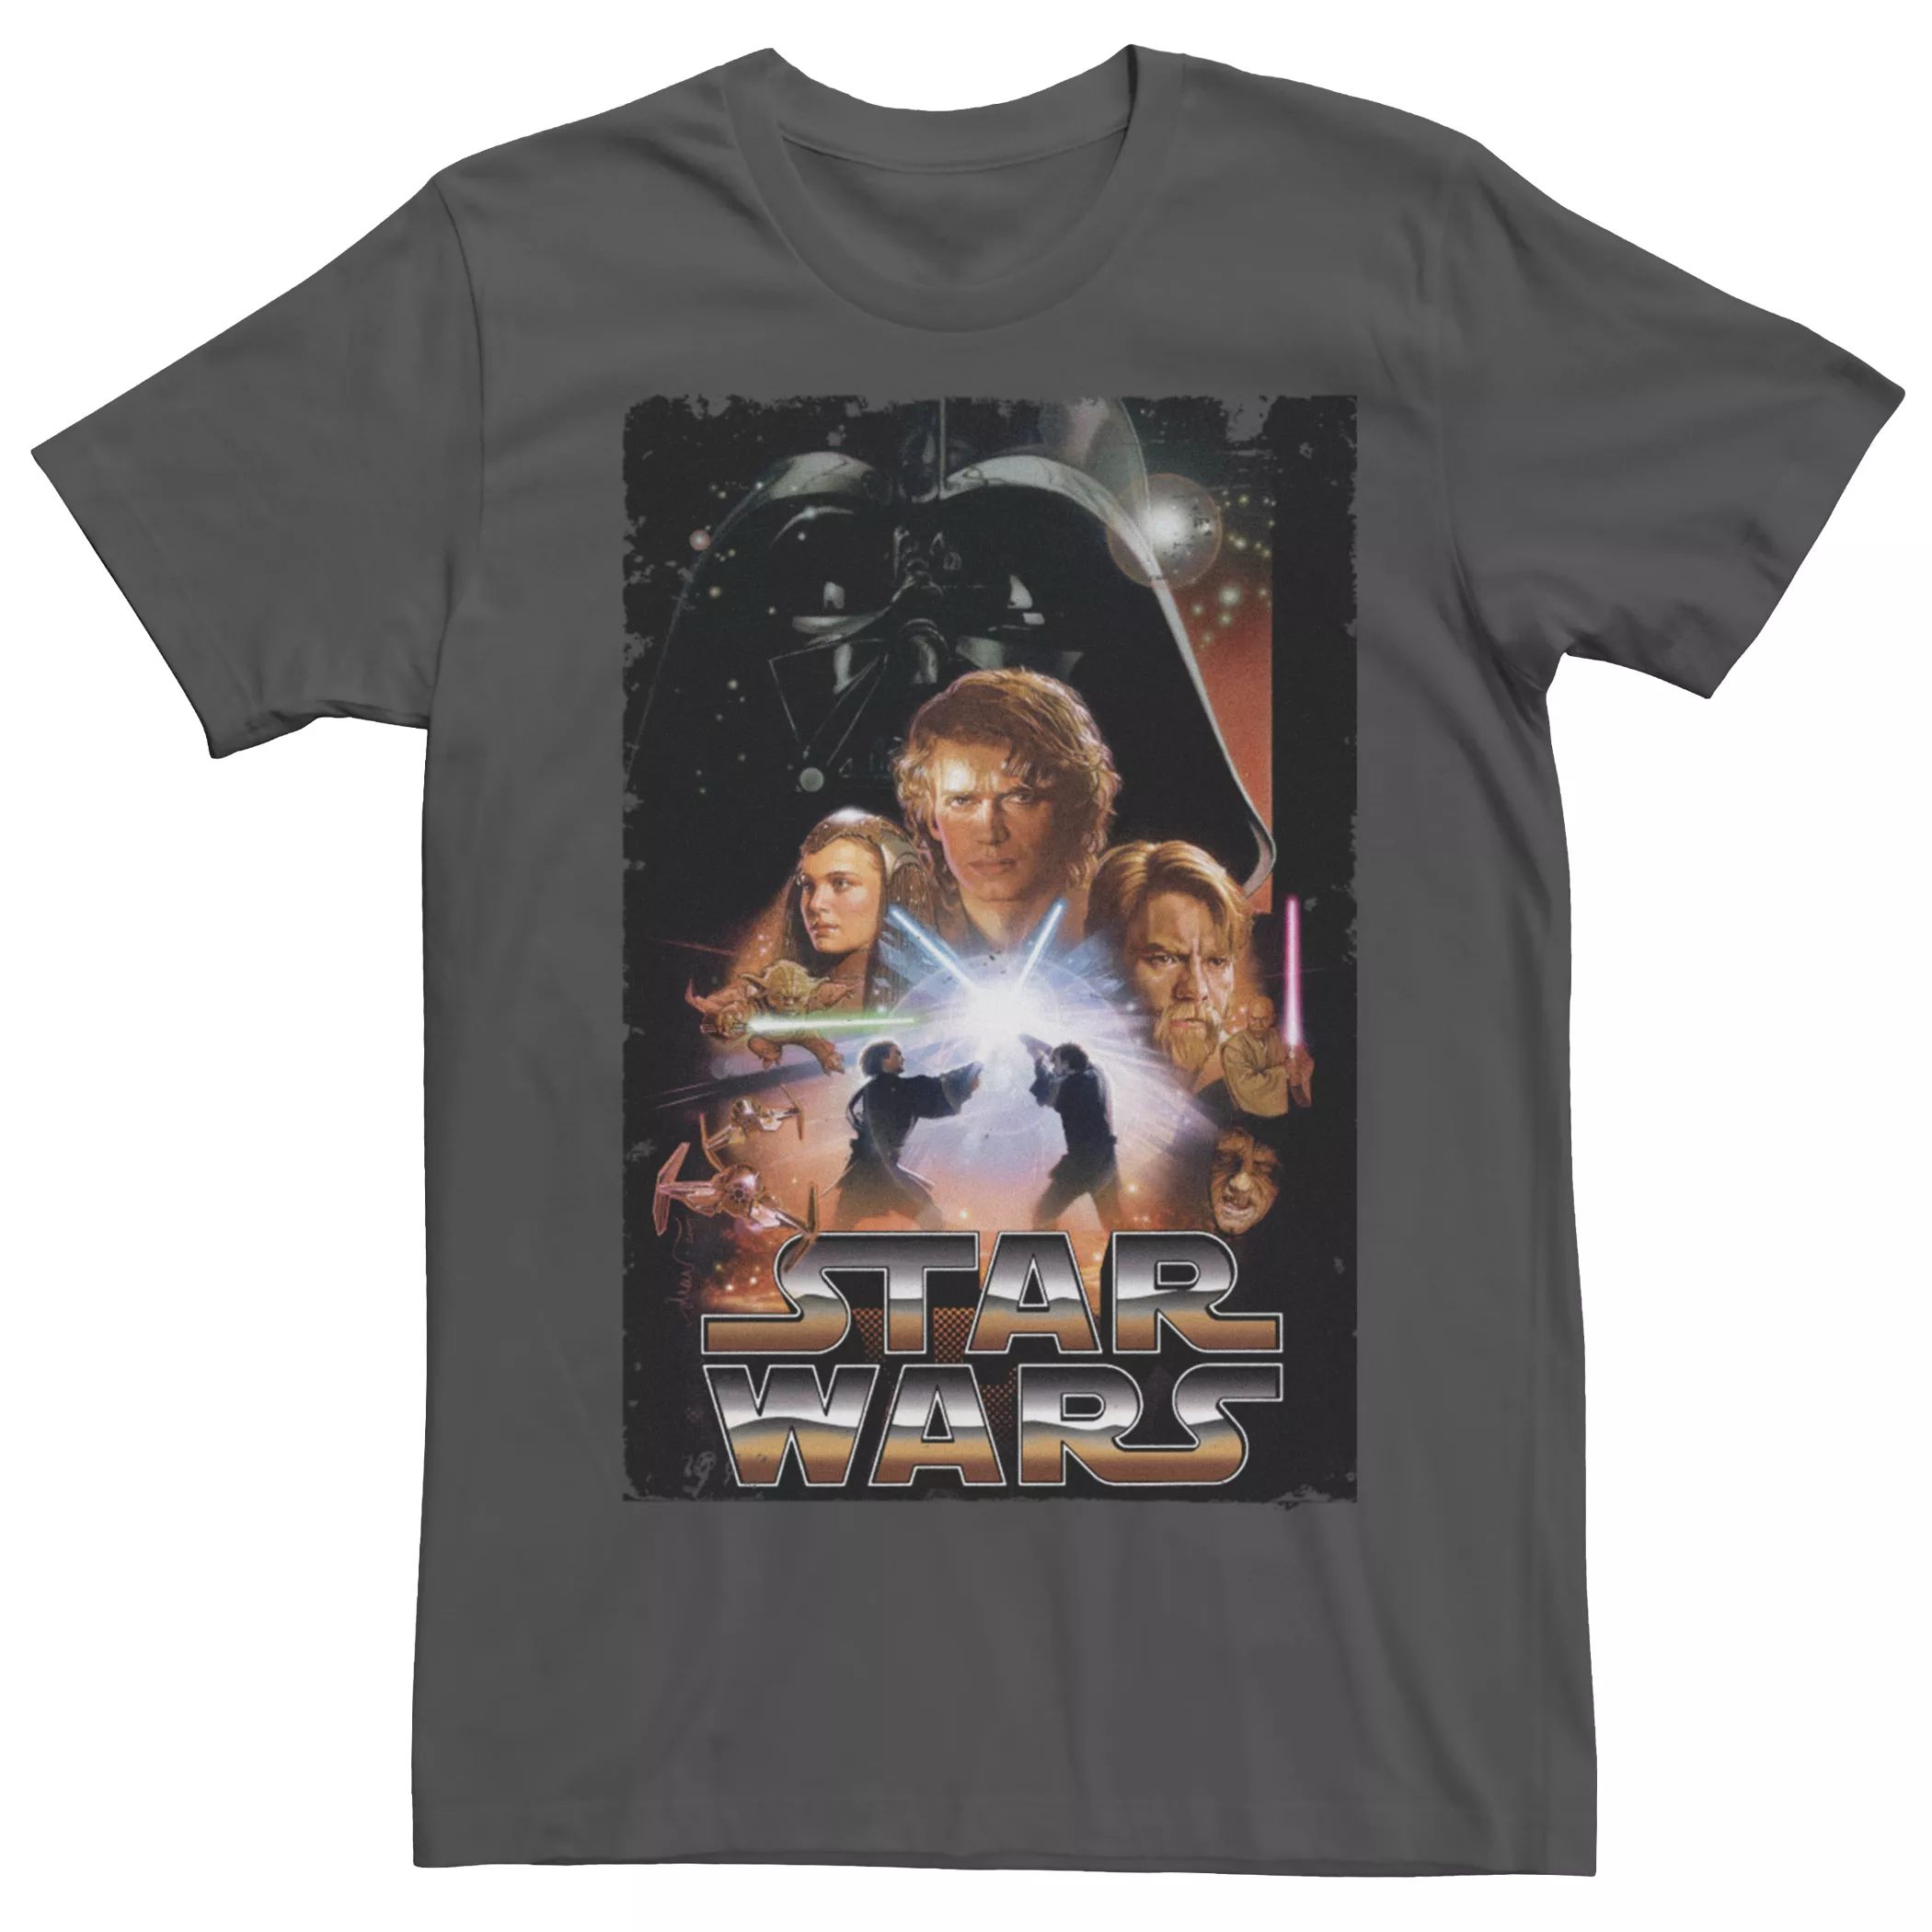 Мужская футболка с постером к фильму «Звездные войны: Месть ситхов», эпизод третий Licensed Character звездные войны эпизод iii – месть ситхов